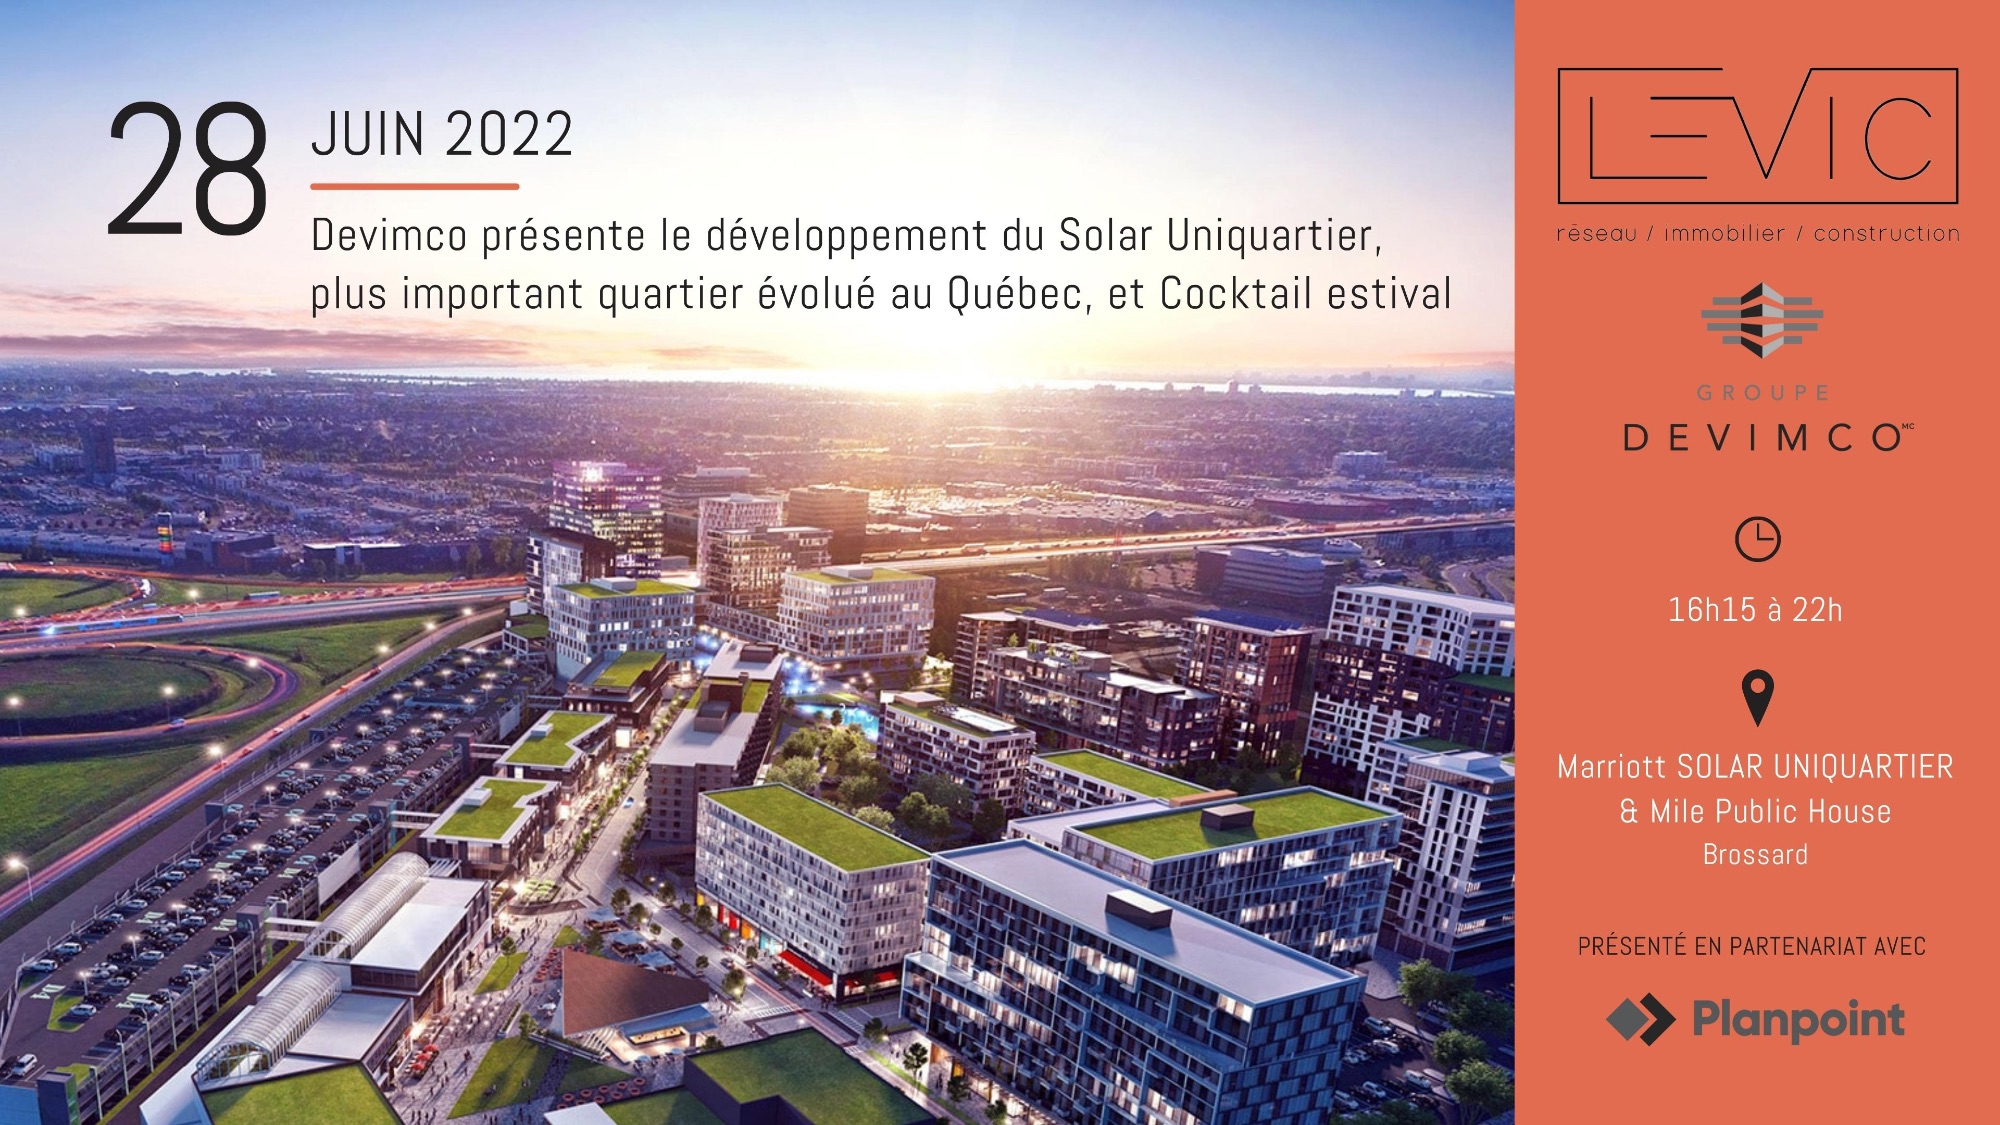 Devimco présente le développement du Solar Uniquartier & cocktail estival